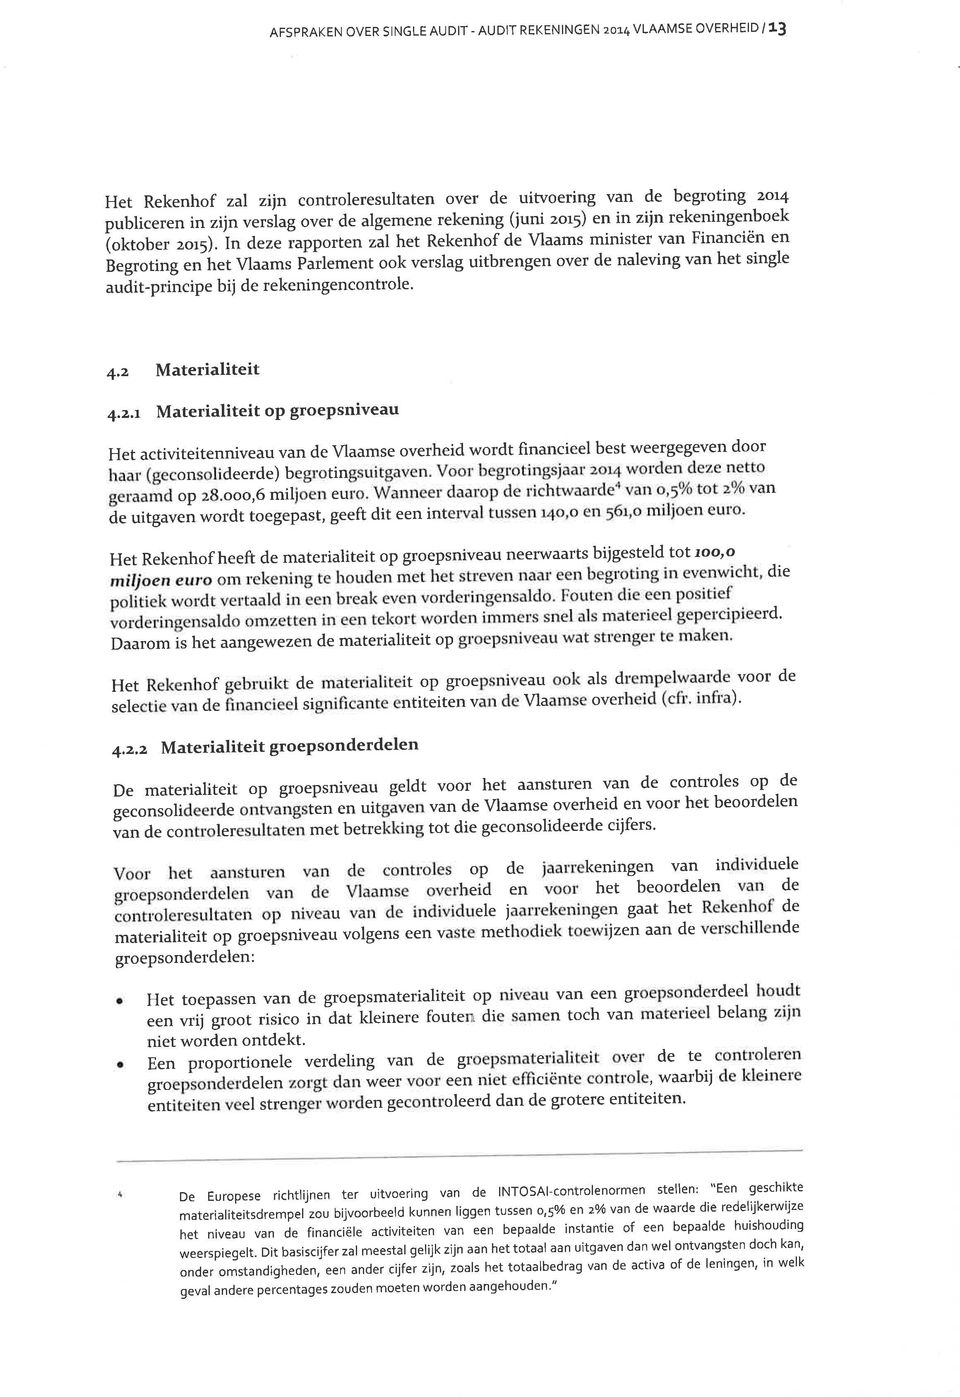 in deze rapporten zal het Rekenhof de Vlaams minister van Financiën en Èegroting Vlaams PuìI"-"ttt ook verslag uitbrengen over de naleving van het single audit-principe "rr-h"t bij de